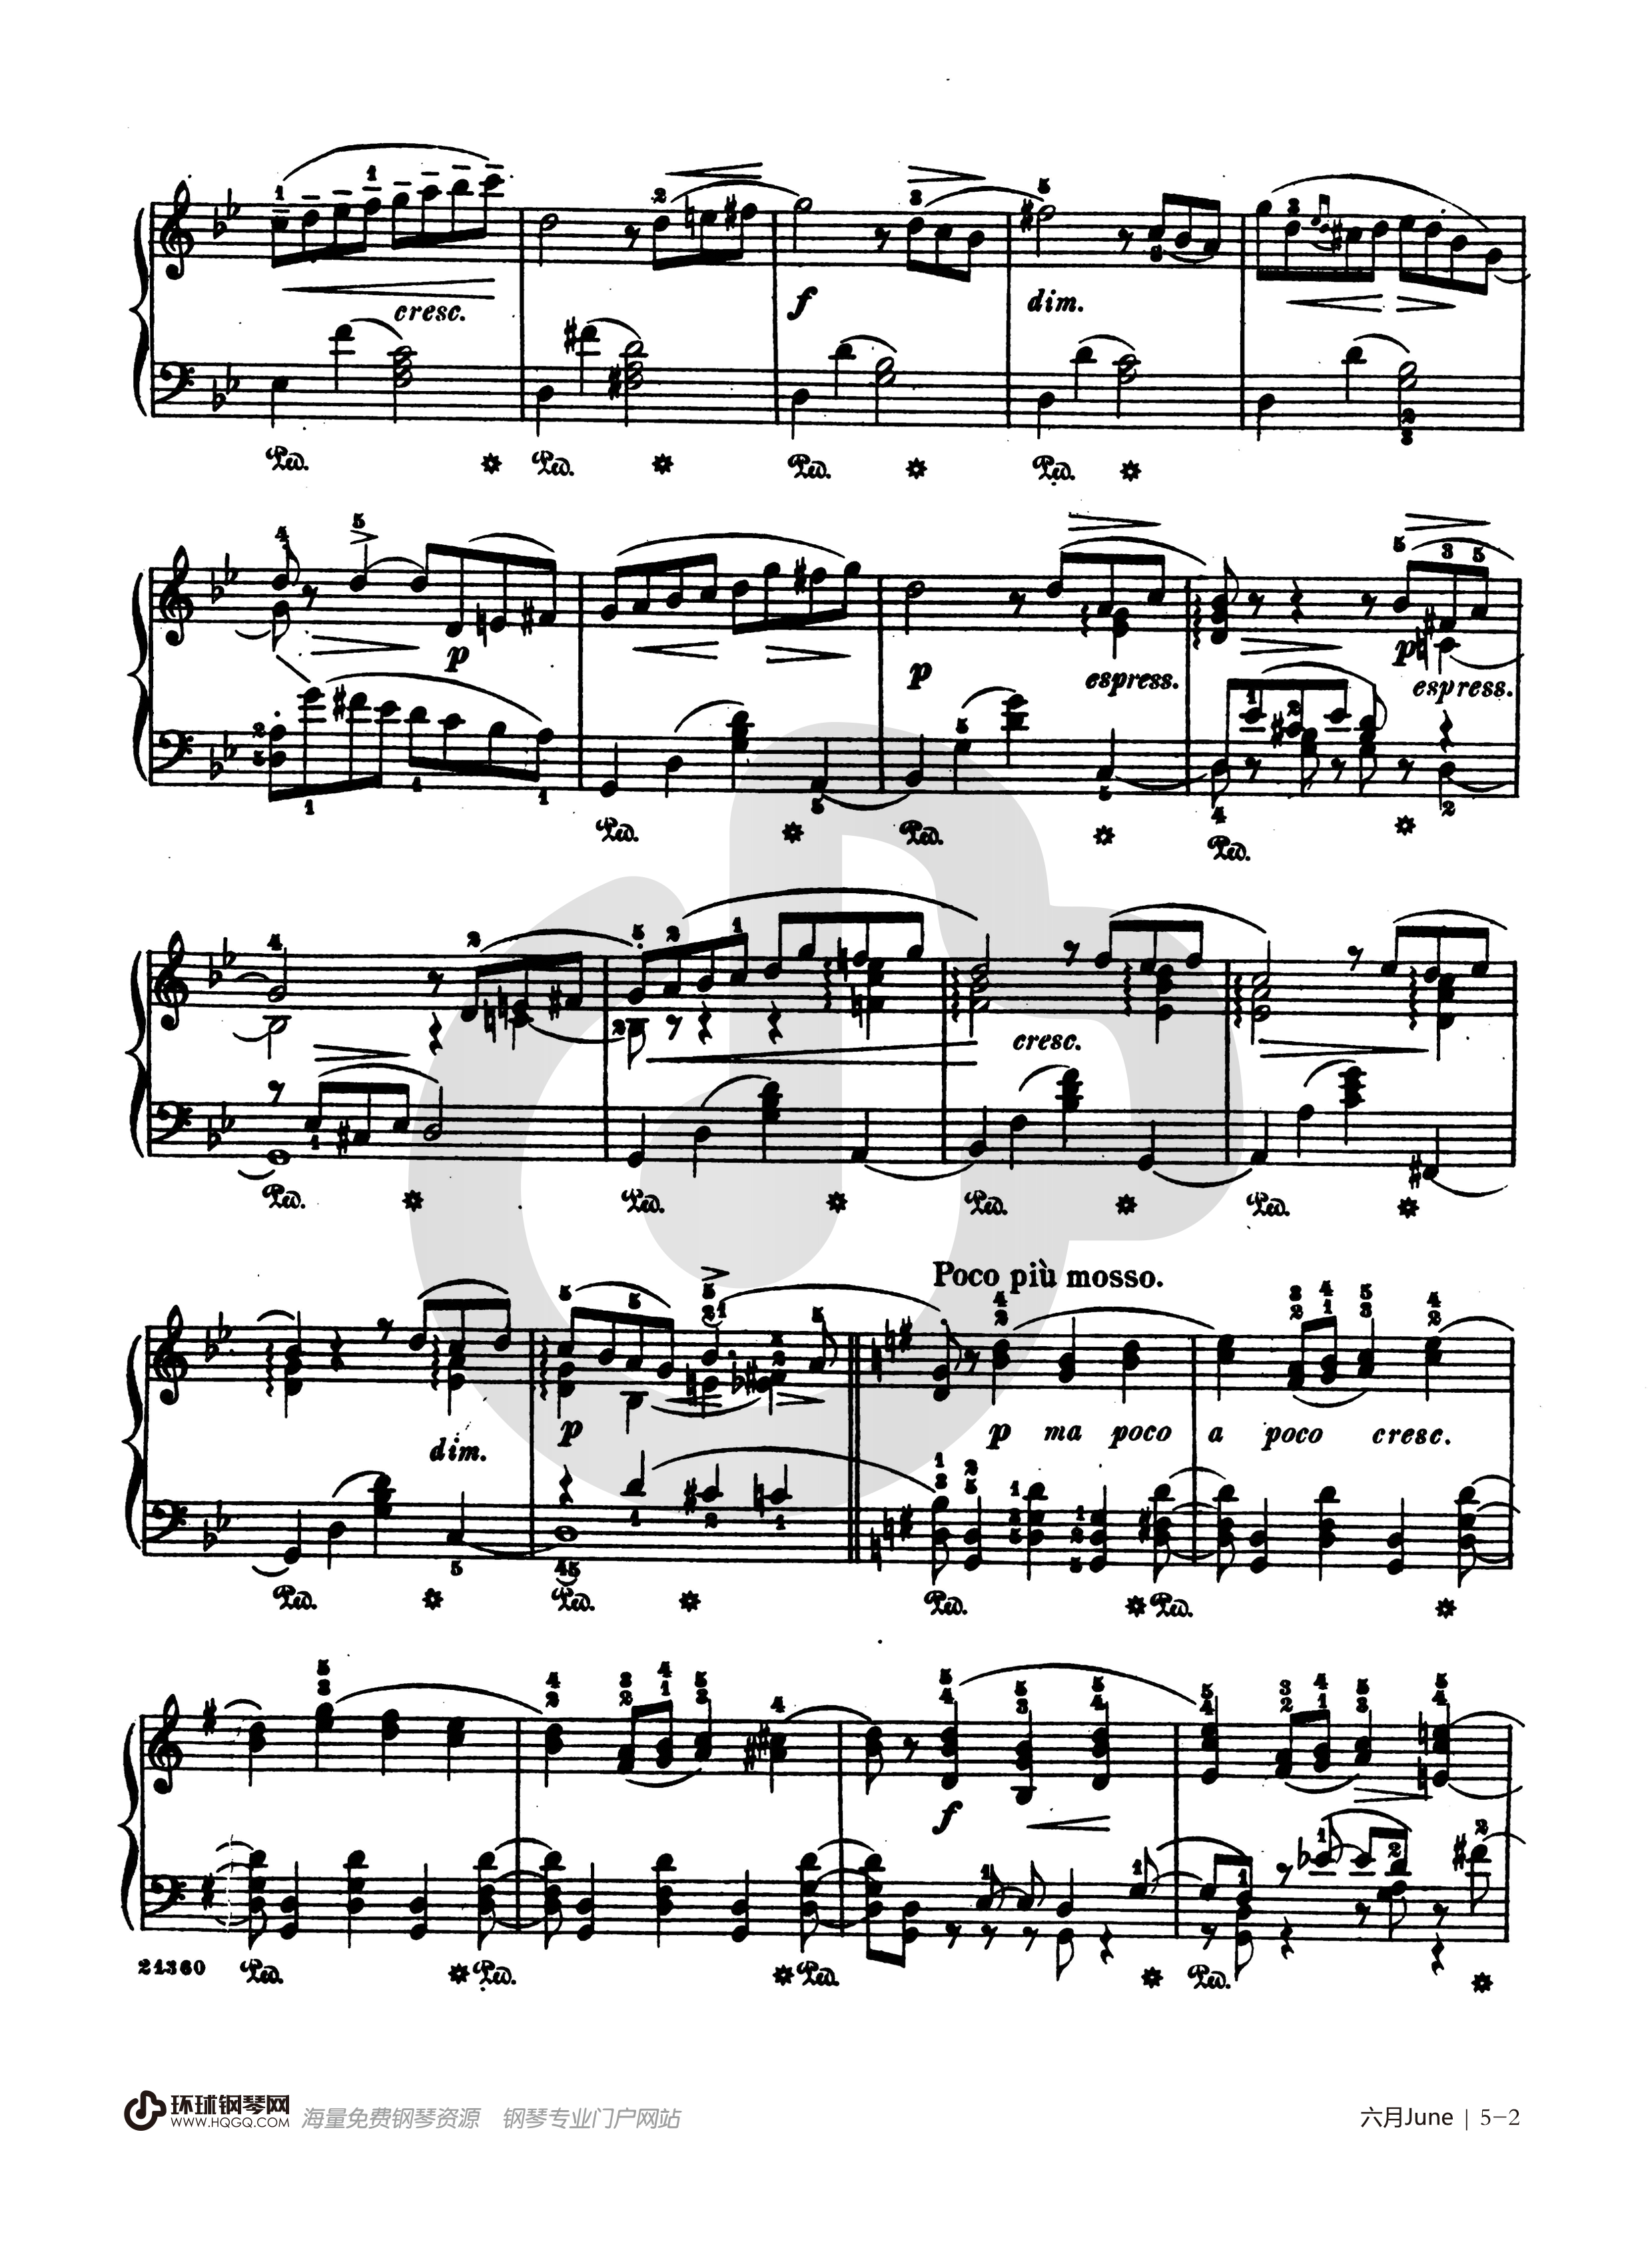 《六月船歌,钢琴谱》柴可夫斯基（五线谱 钢琴曲 指法）-弹吧|蛐蛐钢琴网